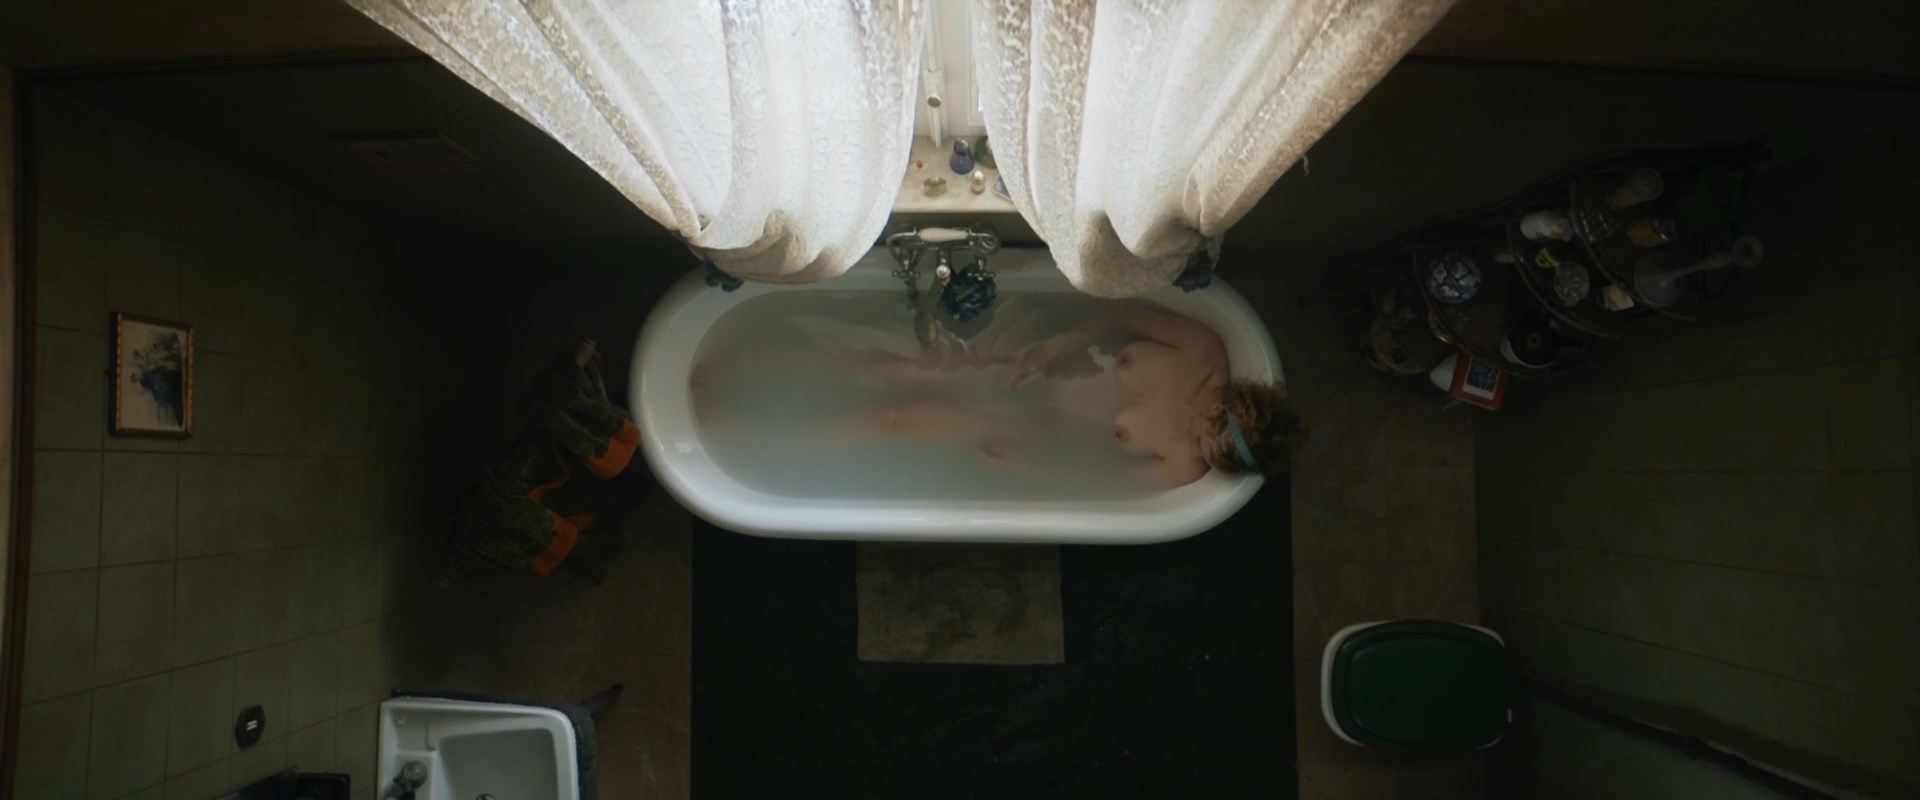 Camilla Filippi nude – La stanza (2021)